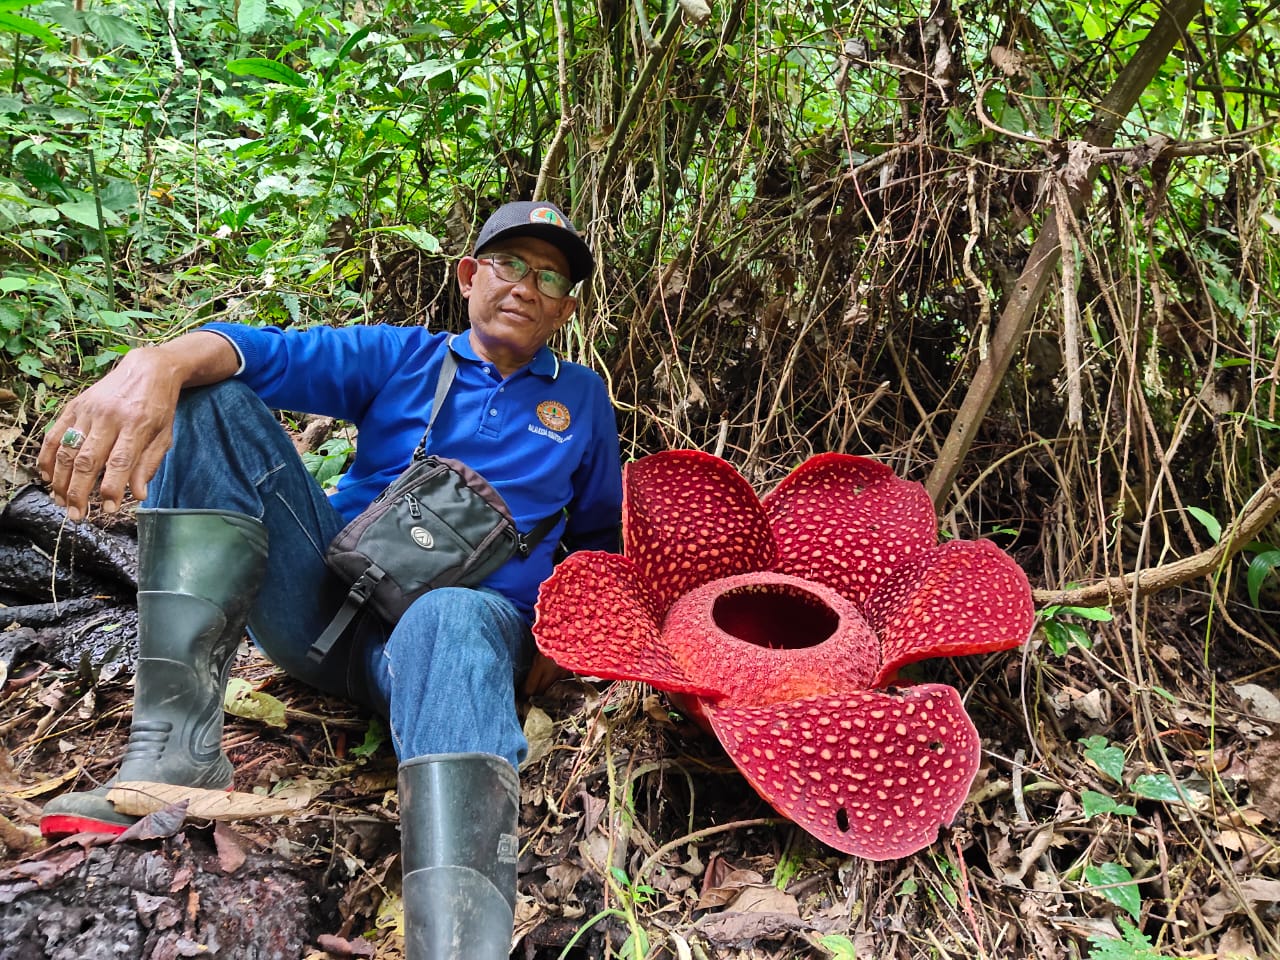 Kepala Balai Konservasi Sumber Daya Alam (BKSDA) Resor Bukittinggi, Vera Ciko, saat berada di lokasi habitat bunga Rafflesia Arnoldii, Batang Palupuh, Agam, Sumbar.